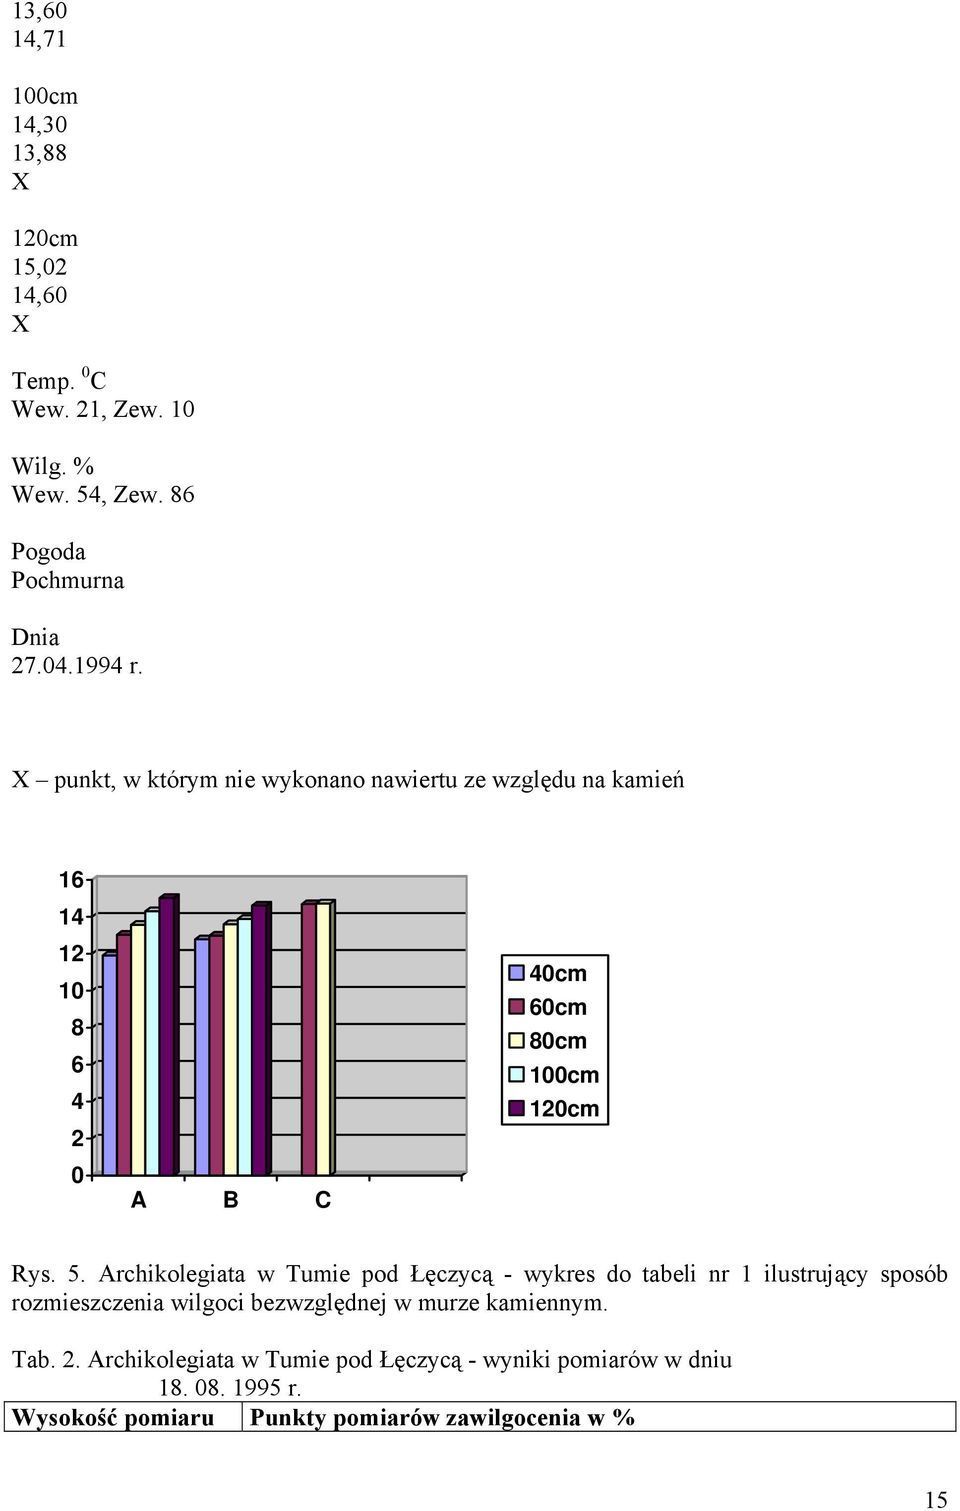 Archikolegiata w Tumie pod Łęczycą - wykres do tabeli nr 1 ilustrujący sposób rozmieszczenia wilgoci bezwzględnej w murze kamiennym.